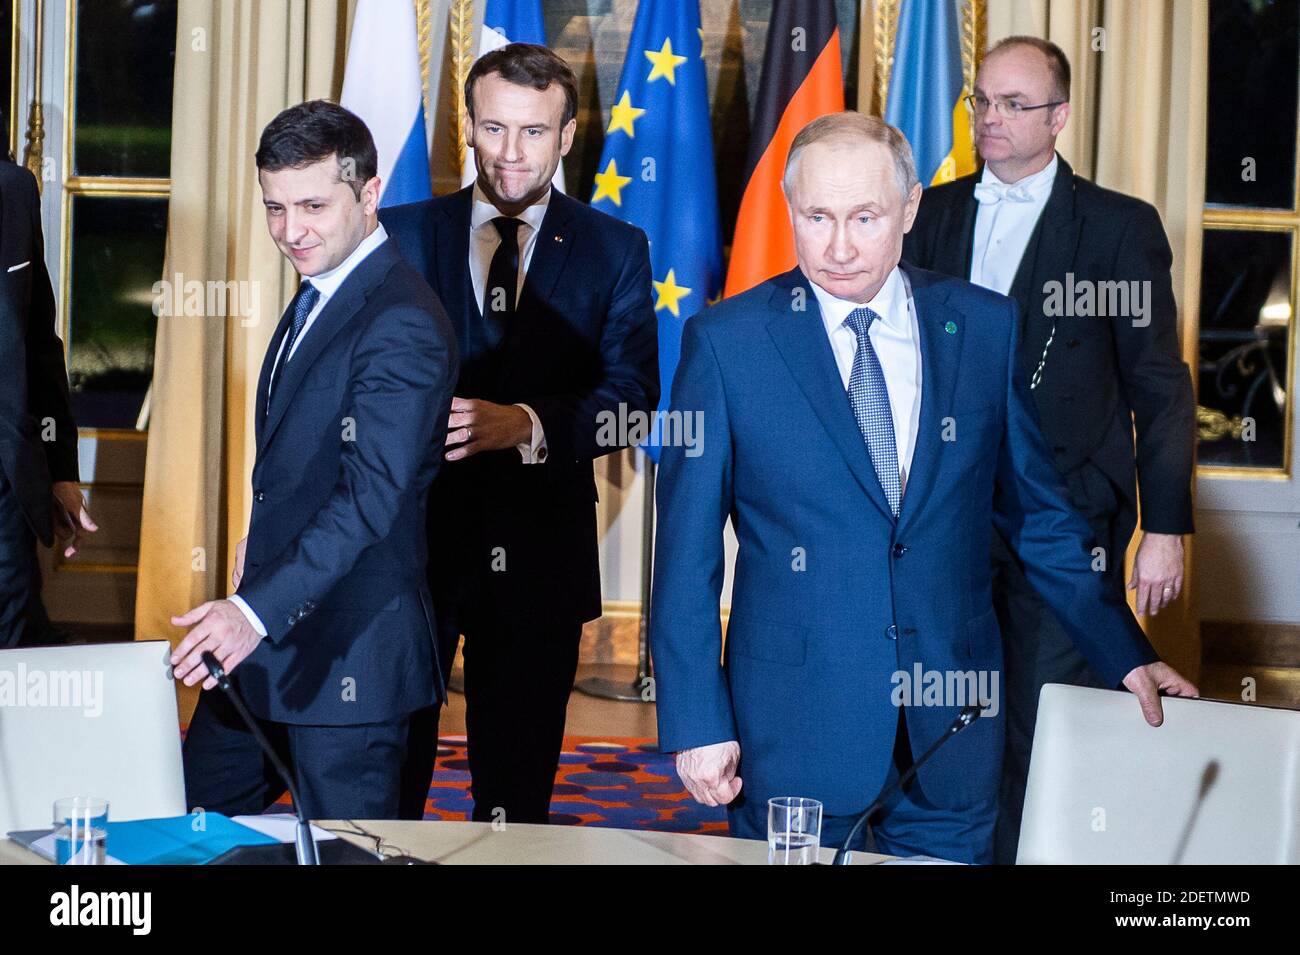 Der französische Präsident Emmanuel Macron, der ukrainische Präsident Volodymyr Zelenski, der russische Präsident Wladimir Putin bei einem Treffen der vier Führer der Normandie im Elysee-Palast in Paris, Frankreich, am 9. Dezember 2019. Foto von Eliot Blondt/ABACAPRESS.COM Stockfoto